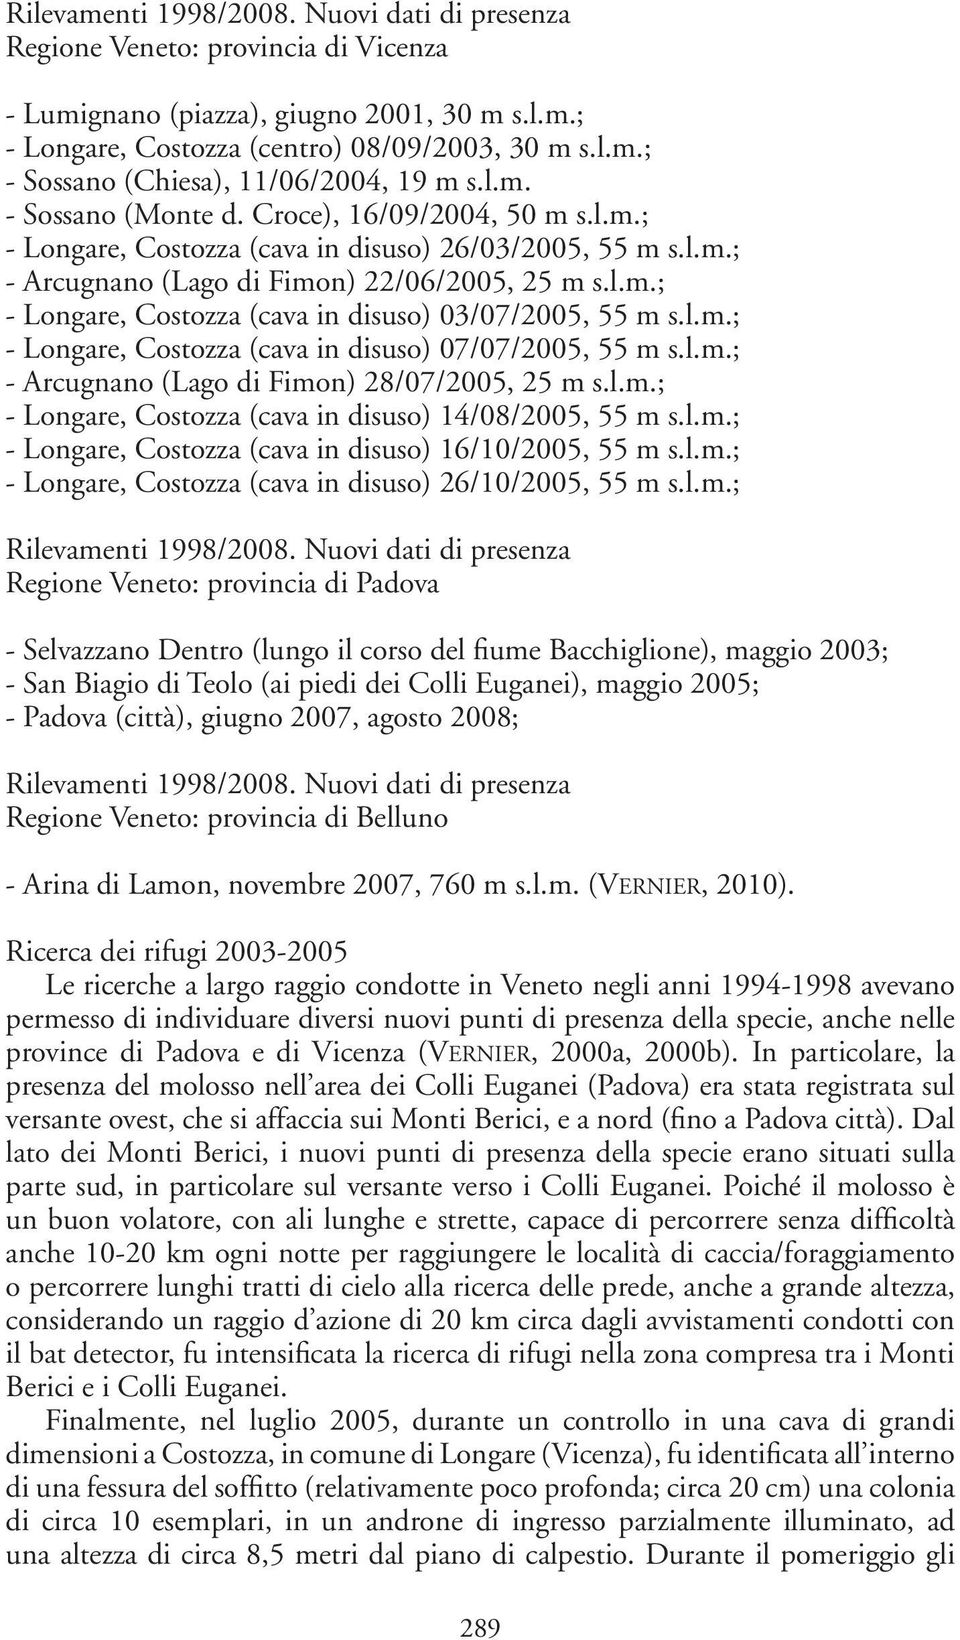 l.m.; - Longare, Costozza (cava in disuso) 07/07/2005, 55 m s.l.m.; - Arcugnano (Lago di Fimon) 28/07/2005, 25 m s.l.m.; - Longare, Costozza (cava in disuso) 14/08/2005, 55 m s.l.m.; - Longare, Costozza (cava in disuso) 16/10/2005, 55 m s.